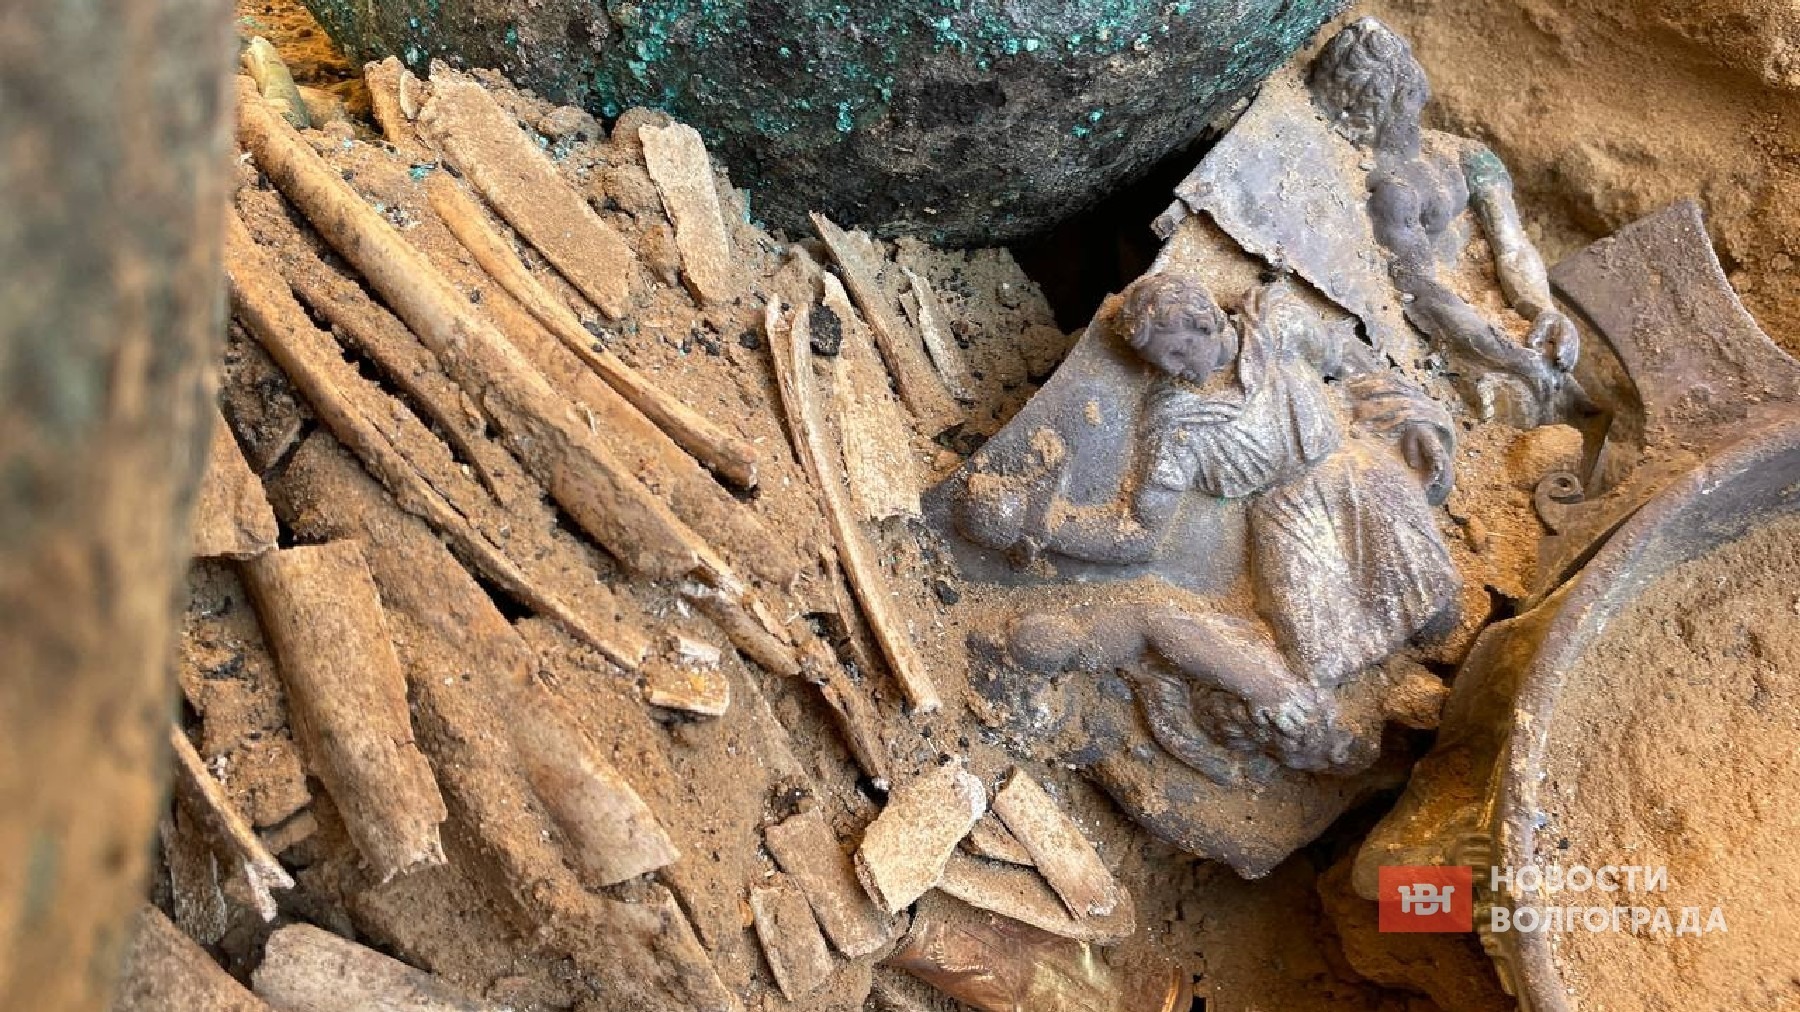 Горы золота и шулюм из коня: что обнаружили в захоронении сарматов под Волгоградом